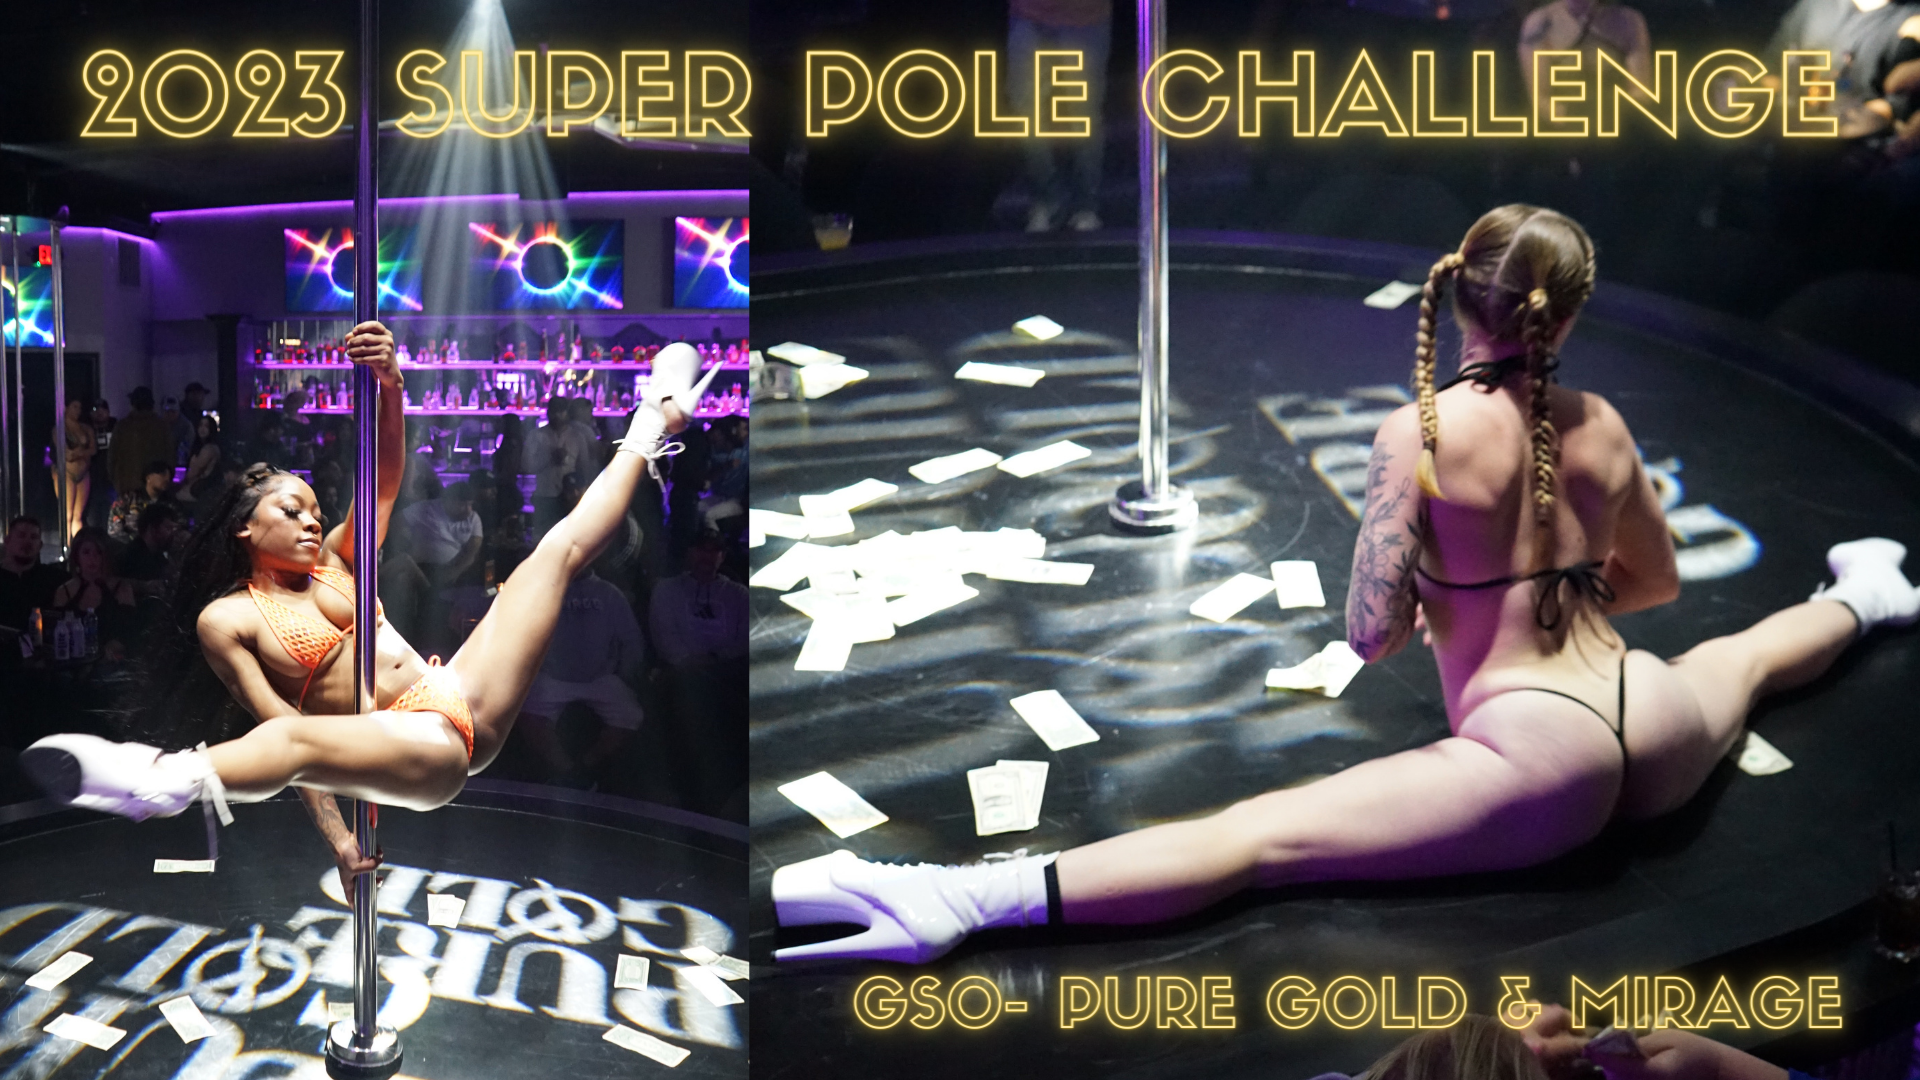 Super Pole Challenge pole dance competition